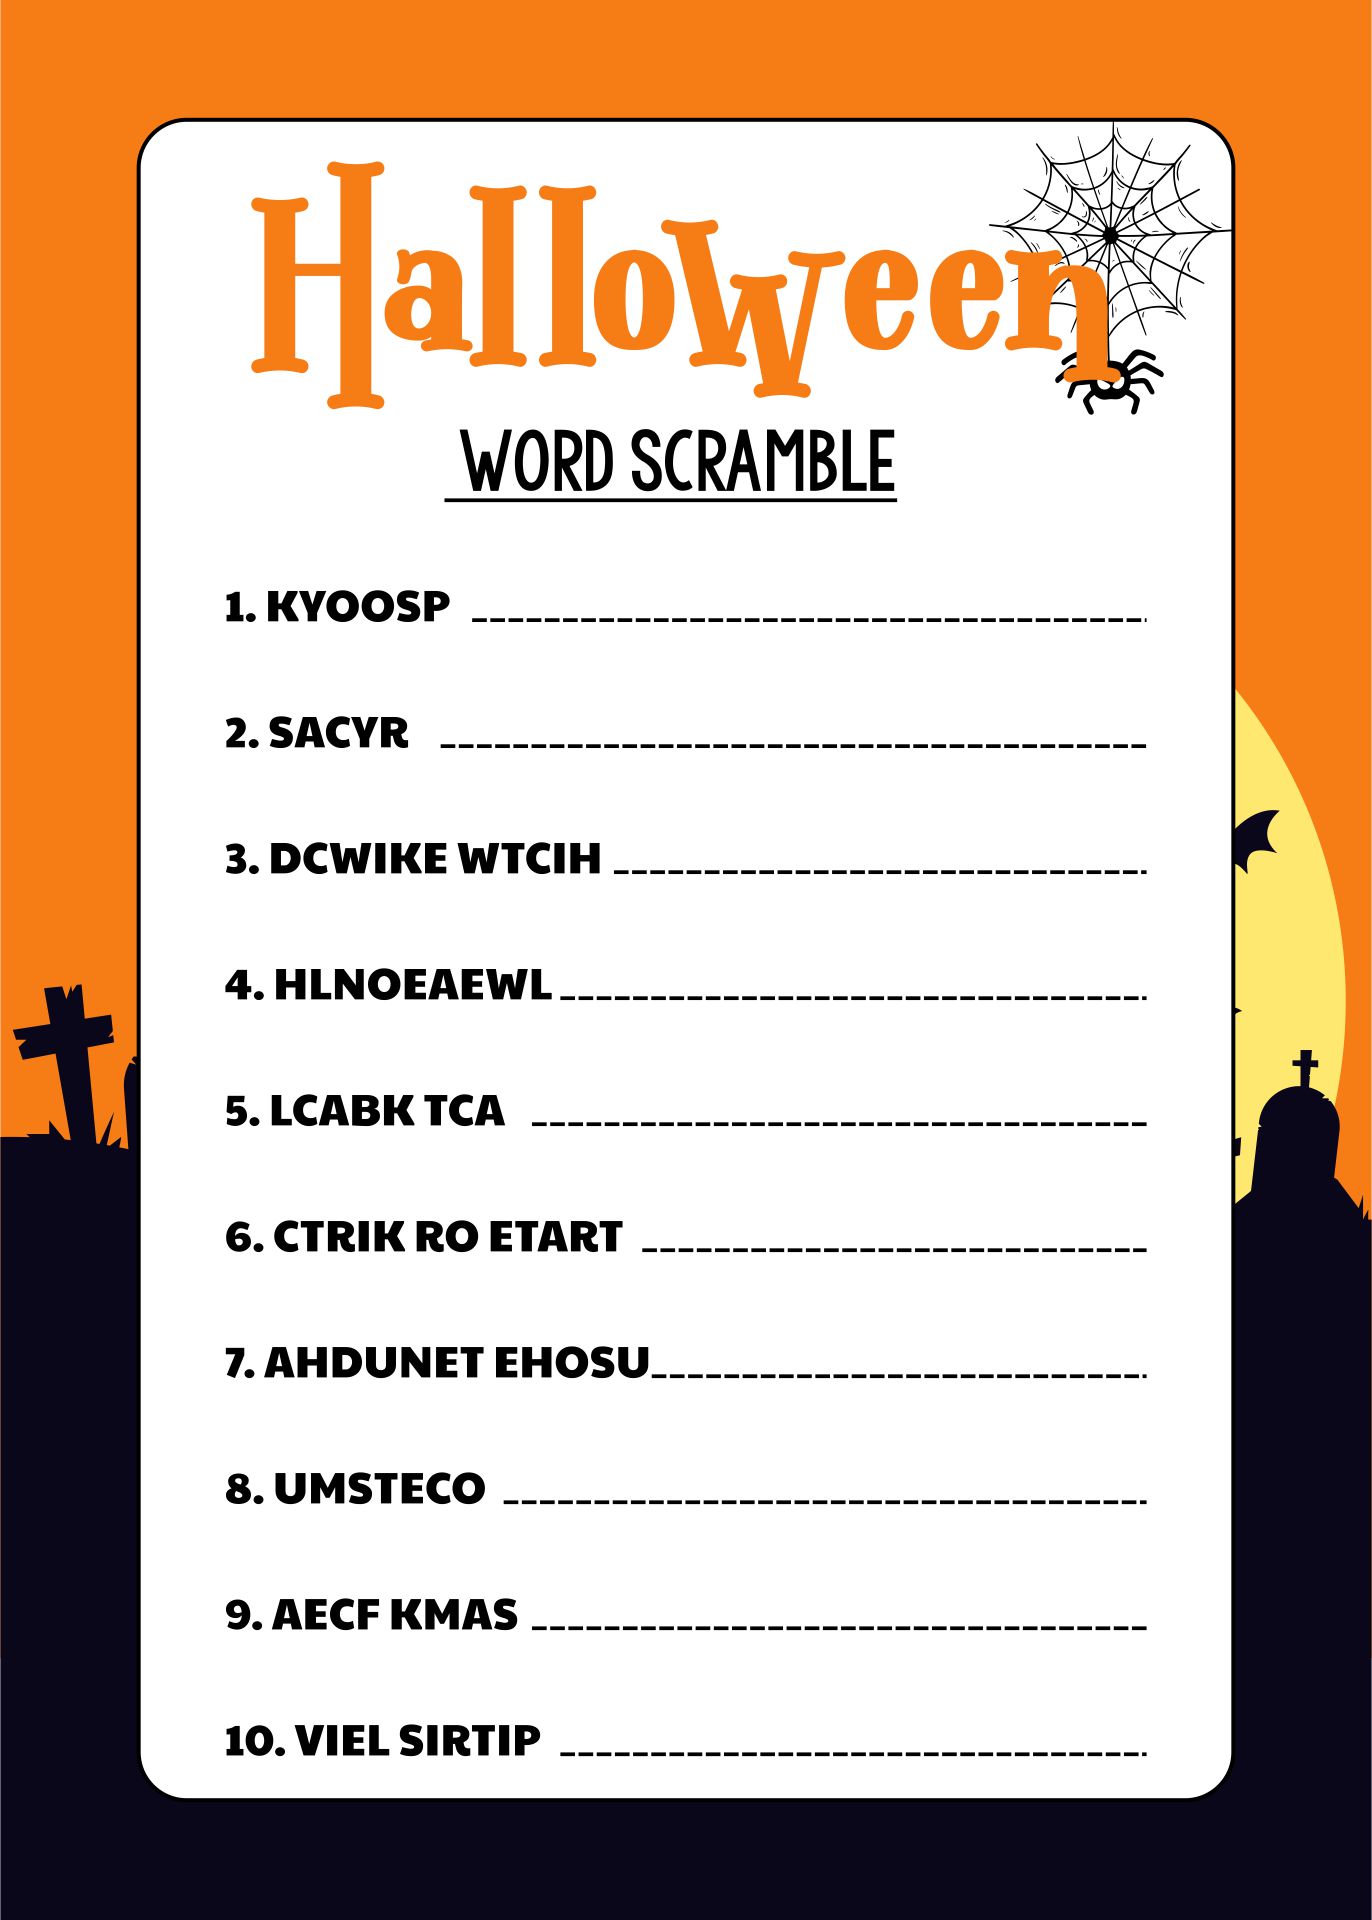 Fun Halloween Word Scramble Printable